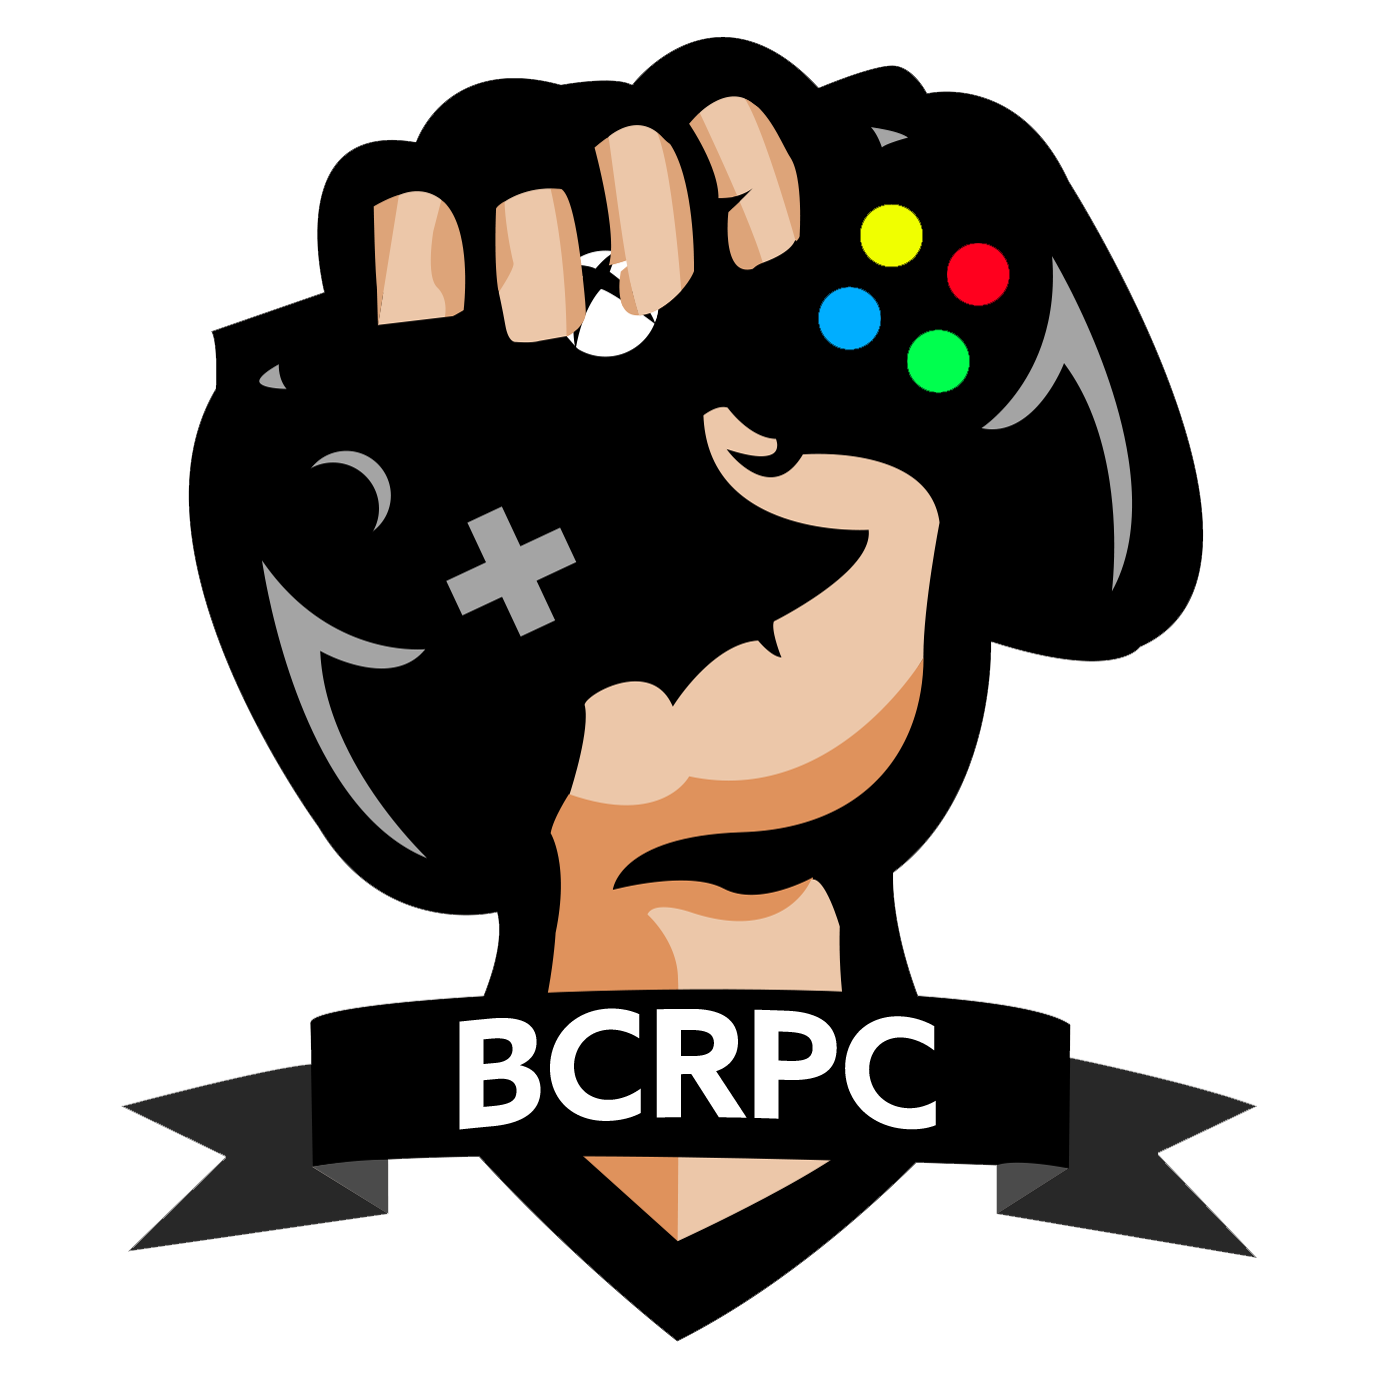 BCRPC